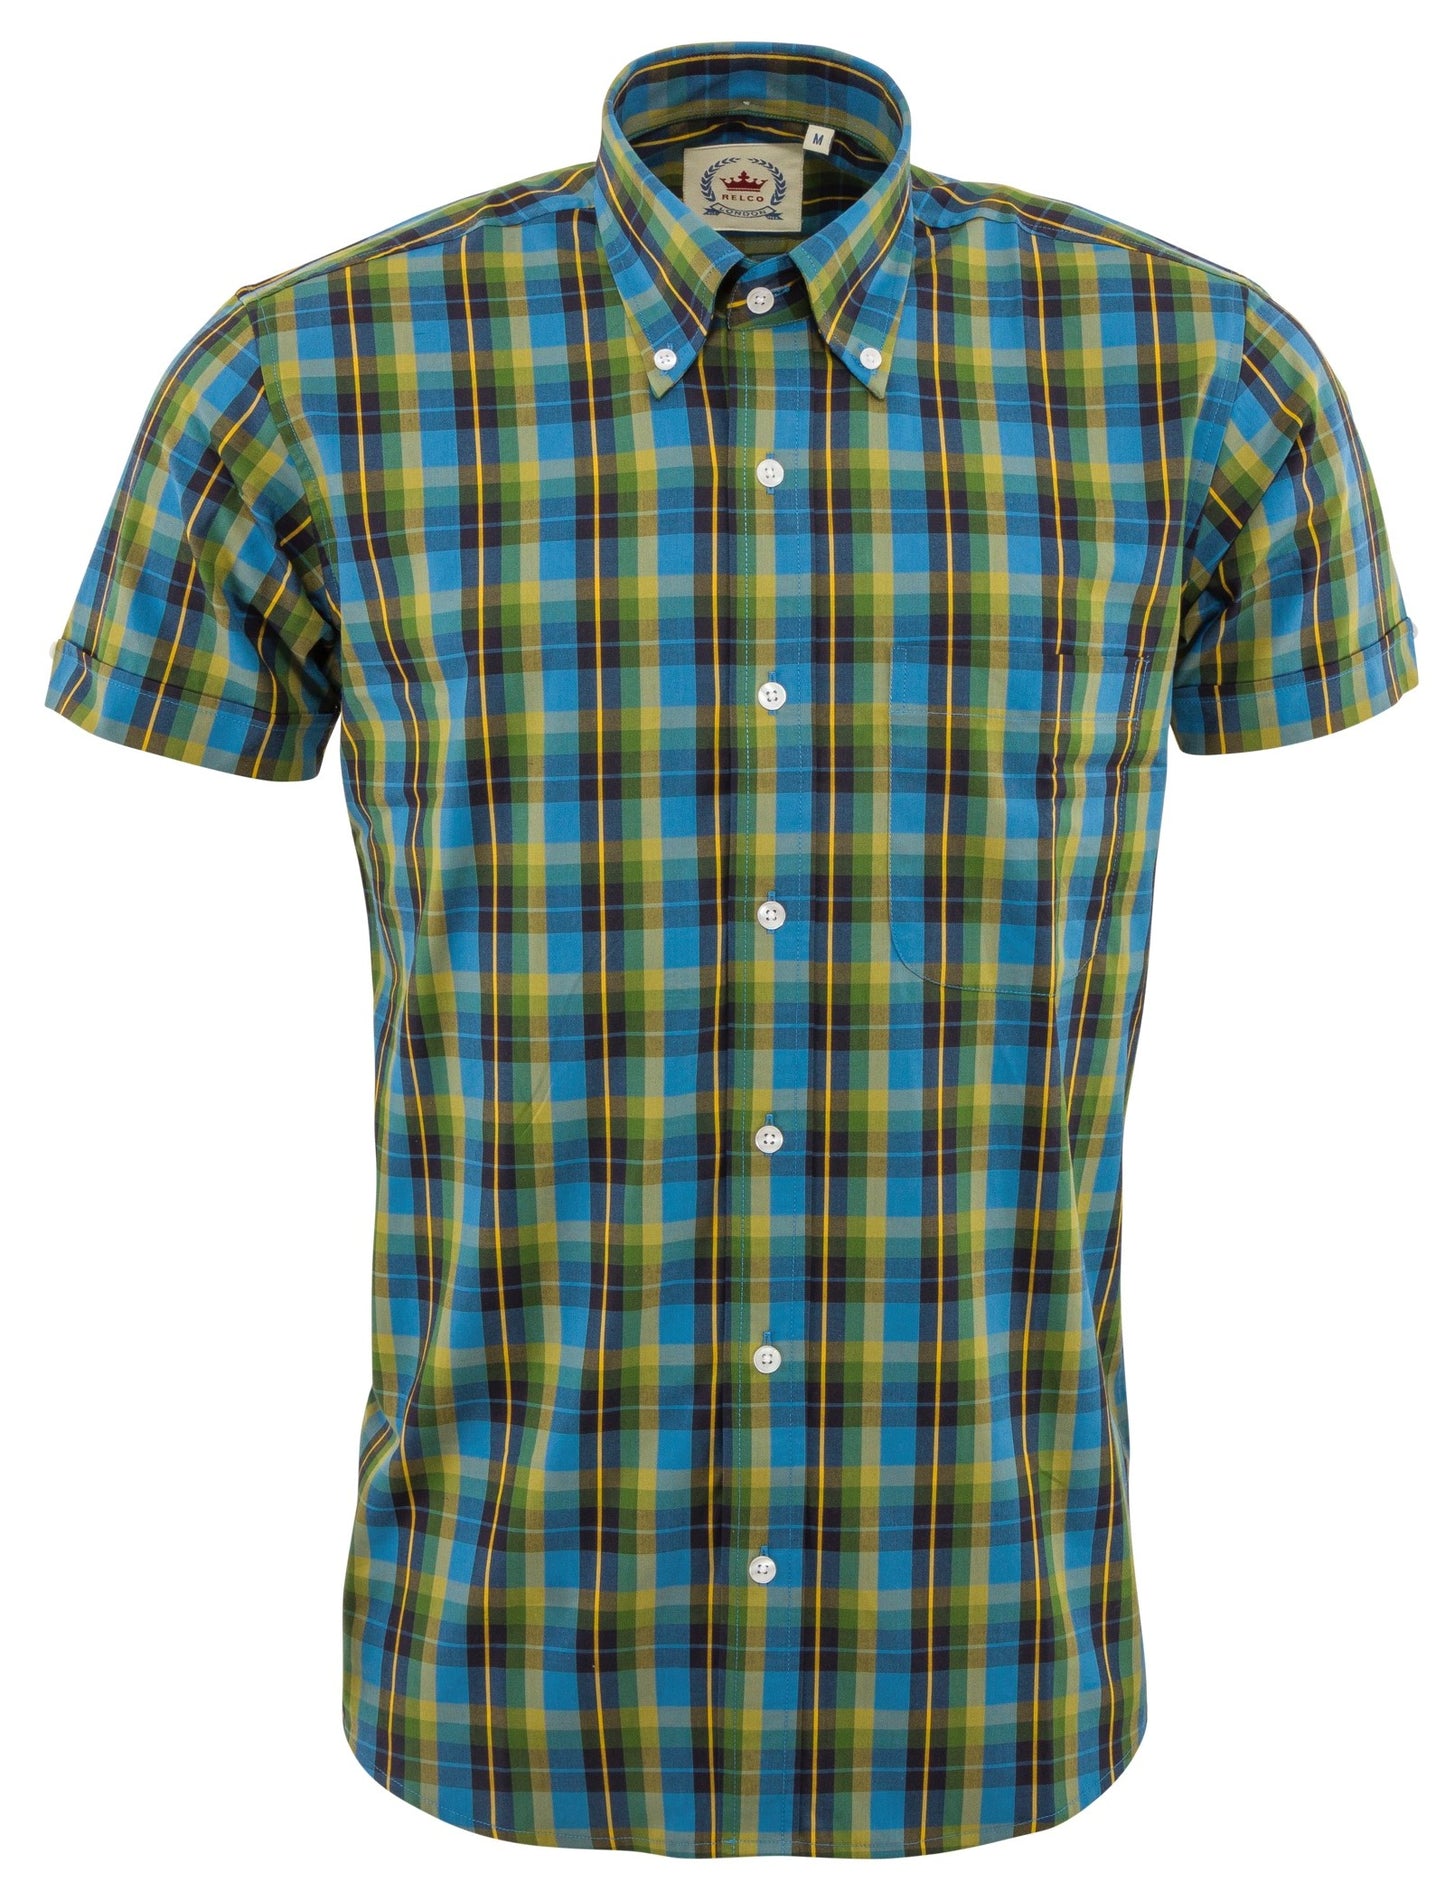 Camisas azules de manga corta con botones a cuadros multicolores Relco para hombre